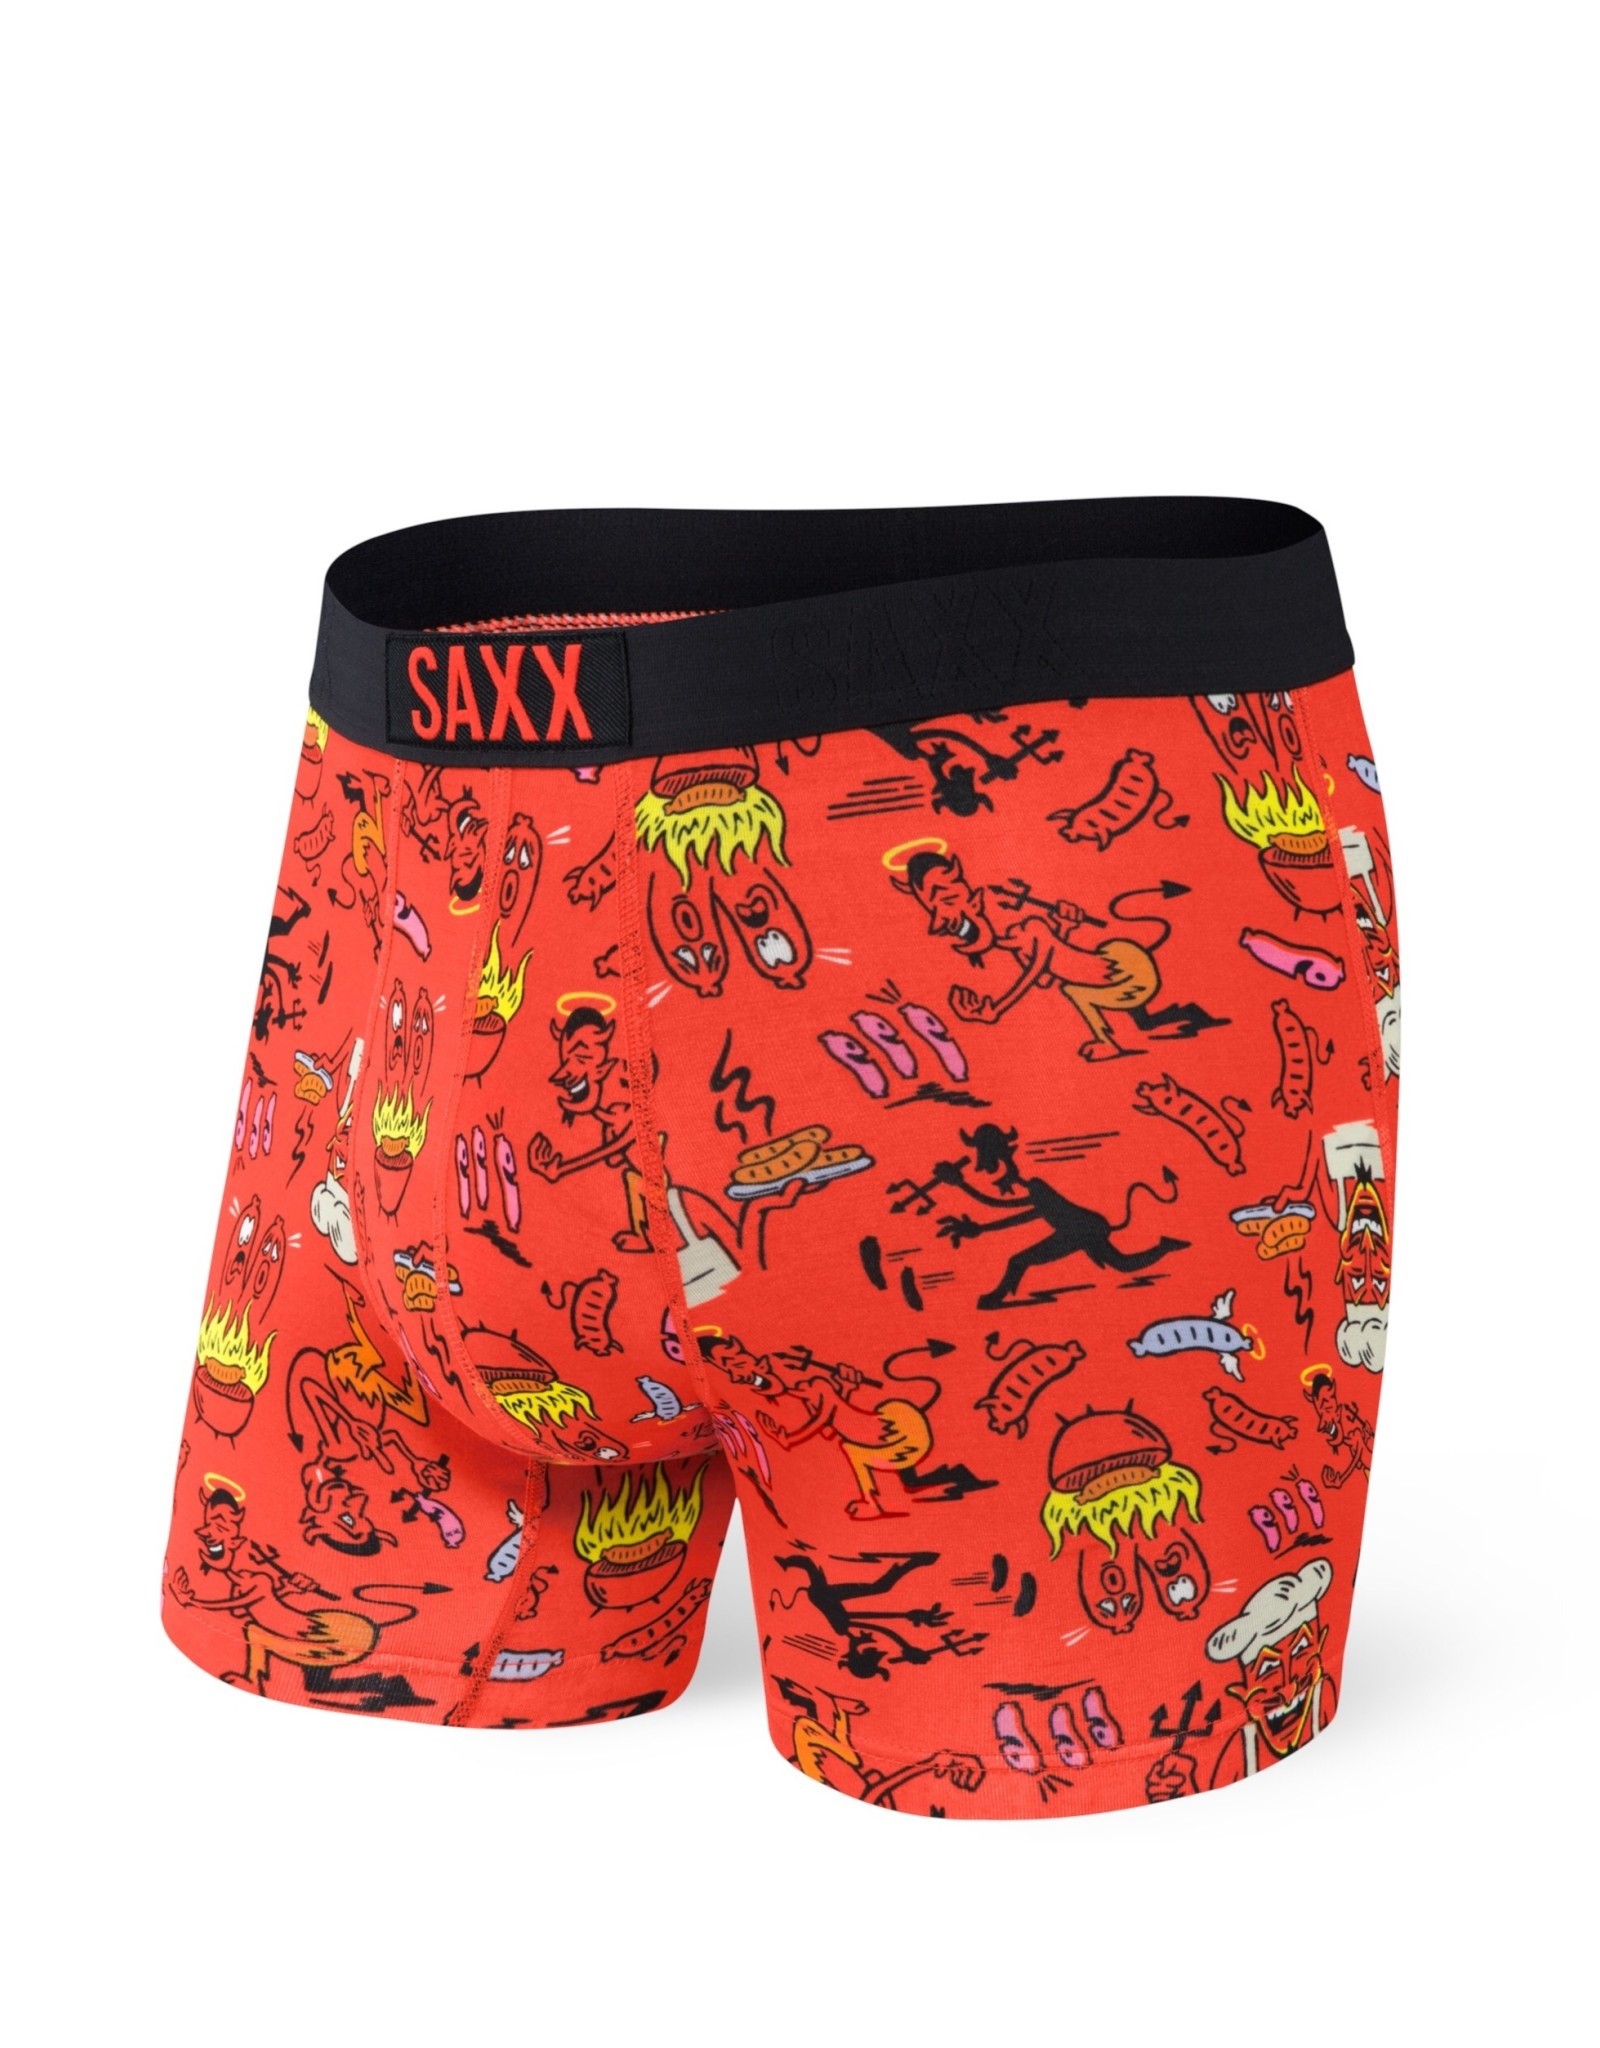 Saxx Vibe - Boxer Brief SXBM35 Men's - Shoes & M'Orr